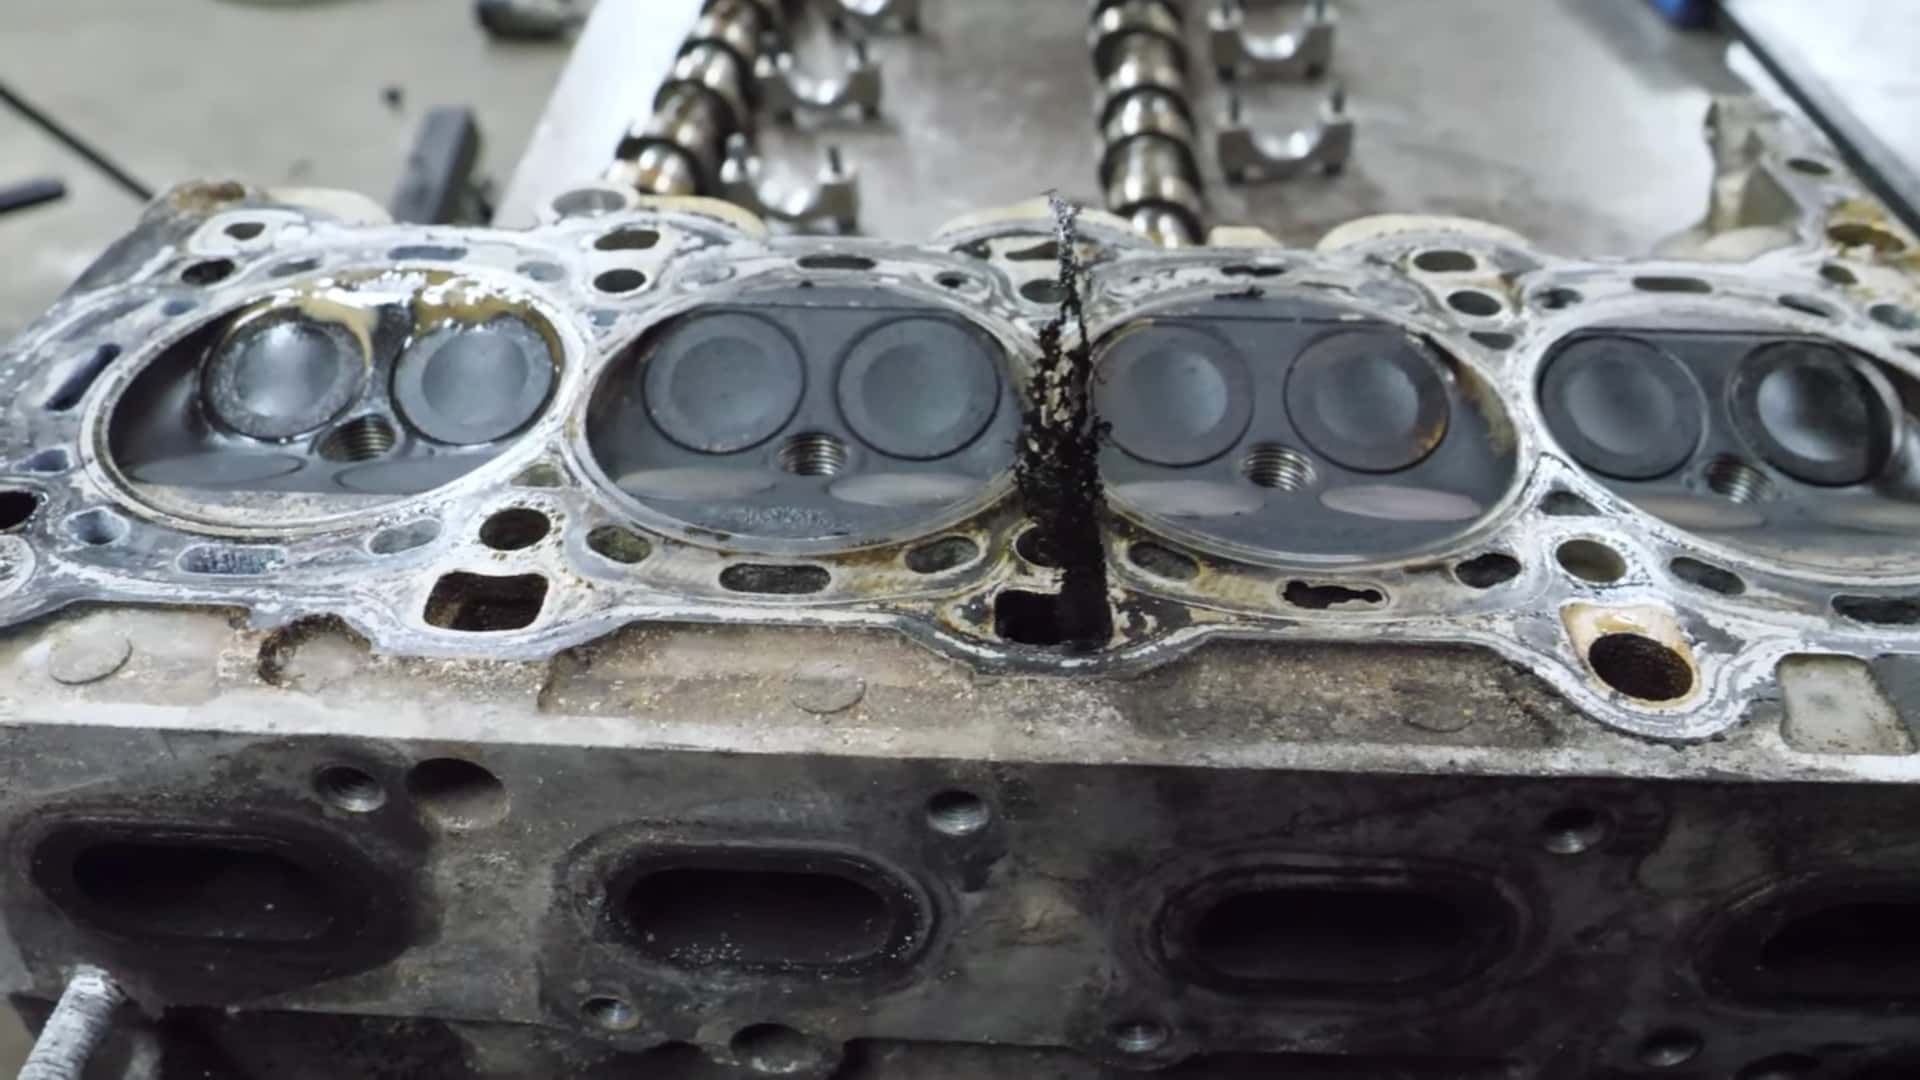 Chevy Turbo Engine Teardown viser, hvorfor kølevæske og olie aldrig bør blandes